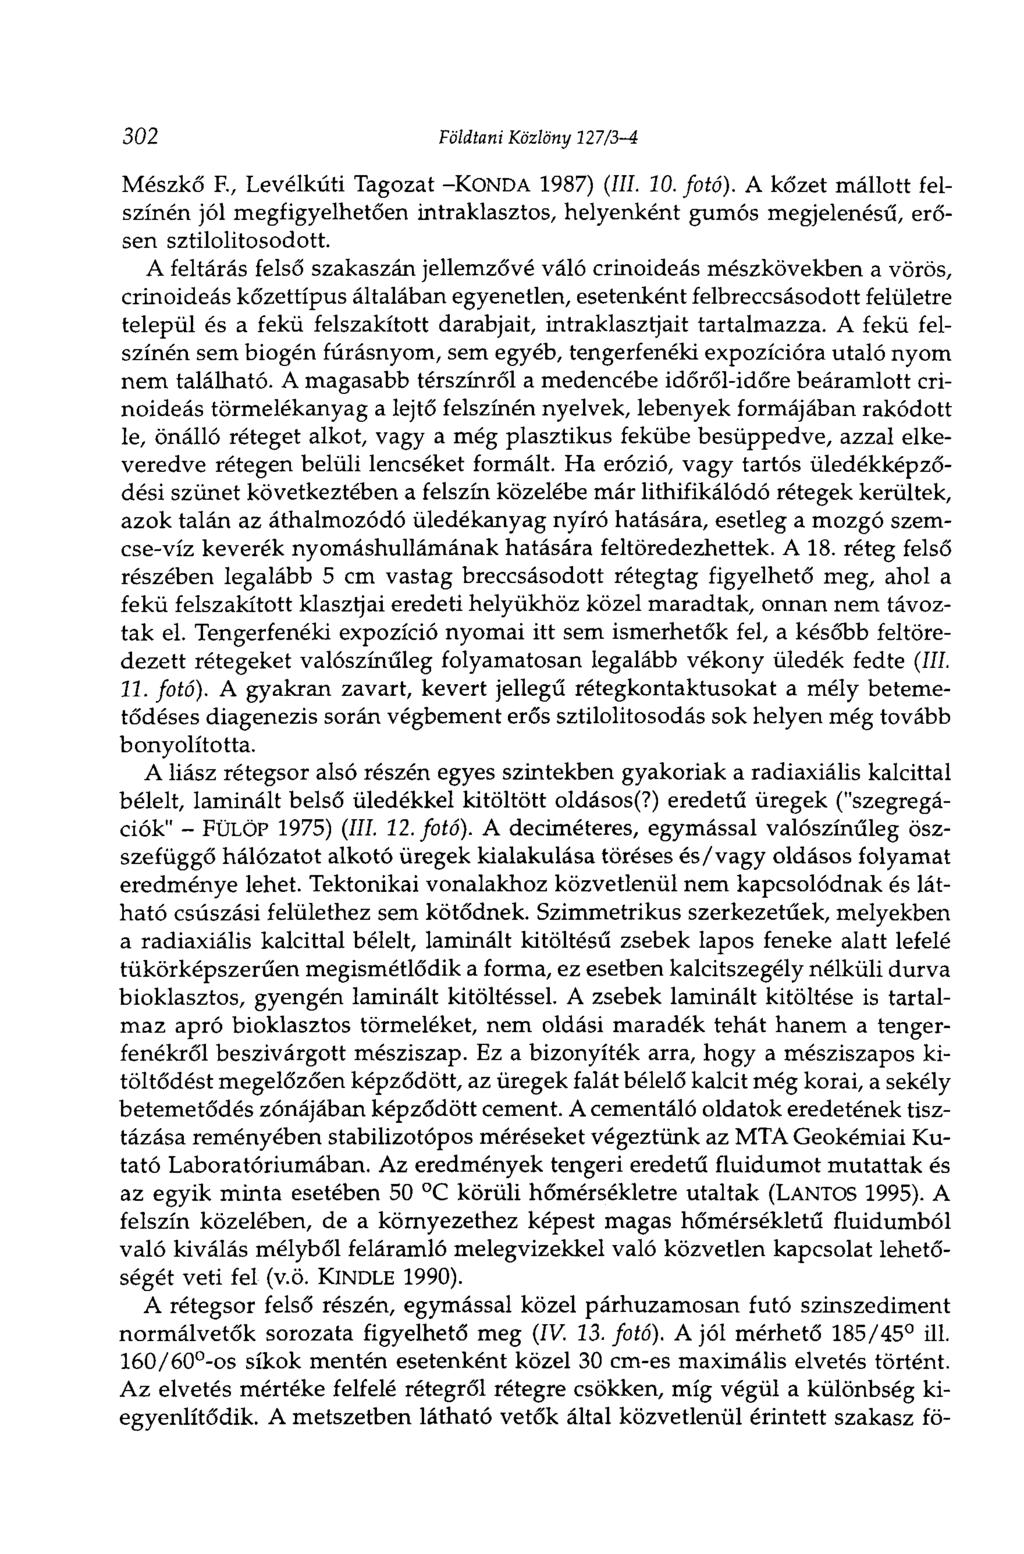 302 Földtani Közlöny 127/3-4 Mészkő E, Levélkúti Tagozat -KONDA 1987) (III. 10. fotó).